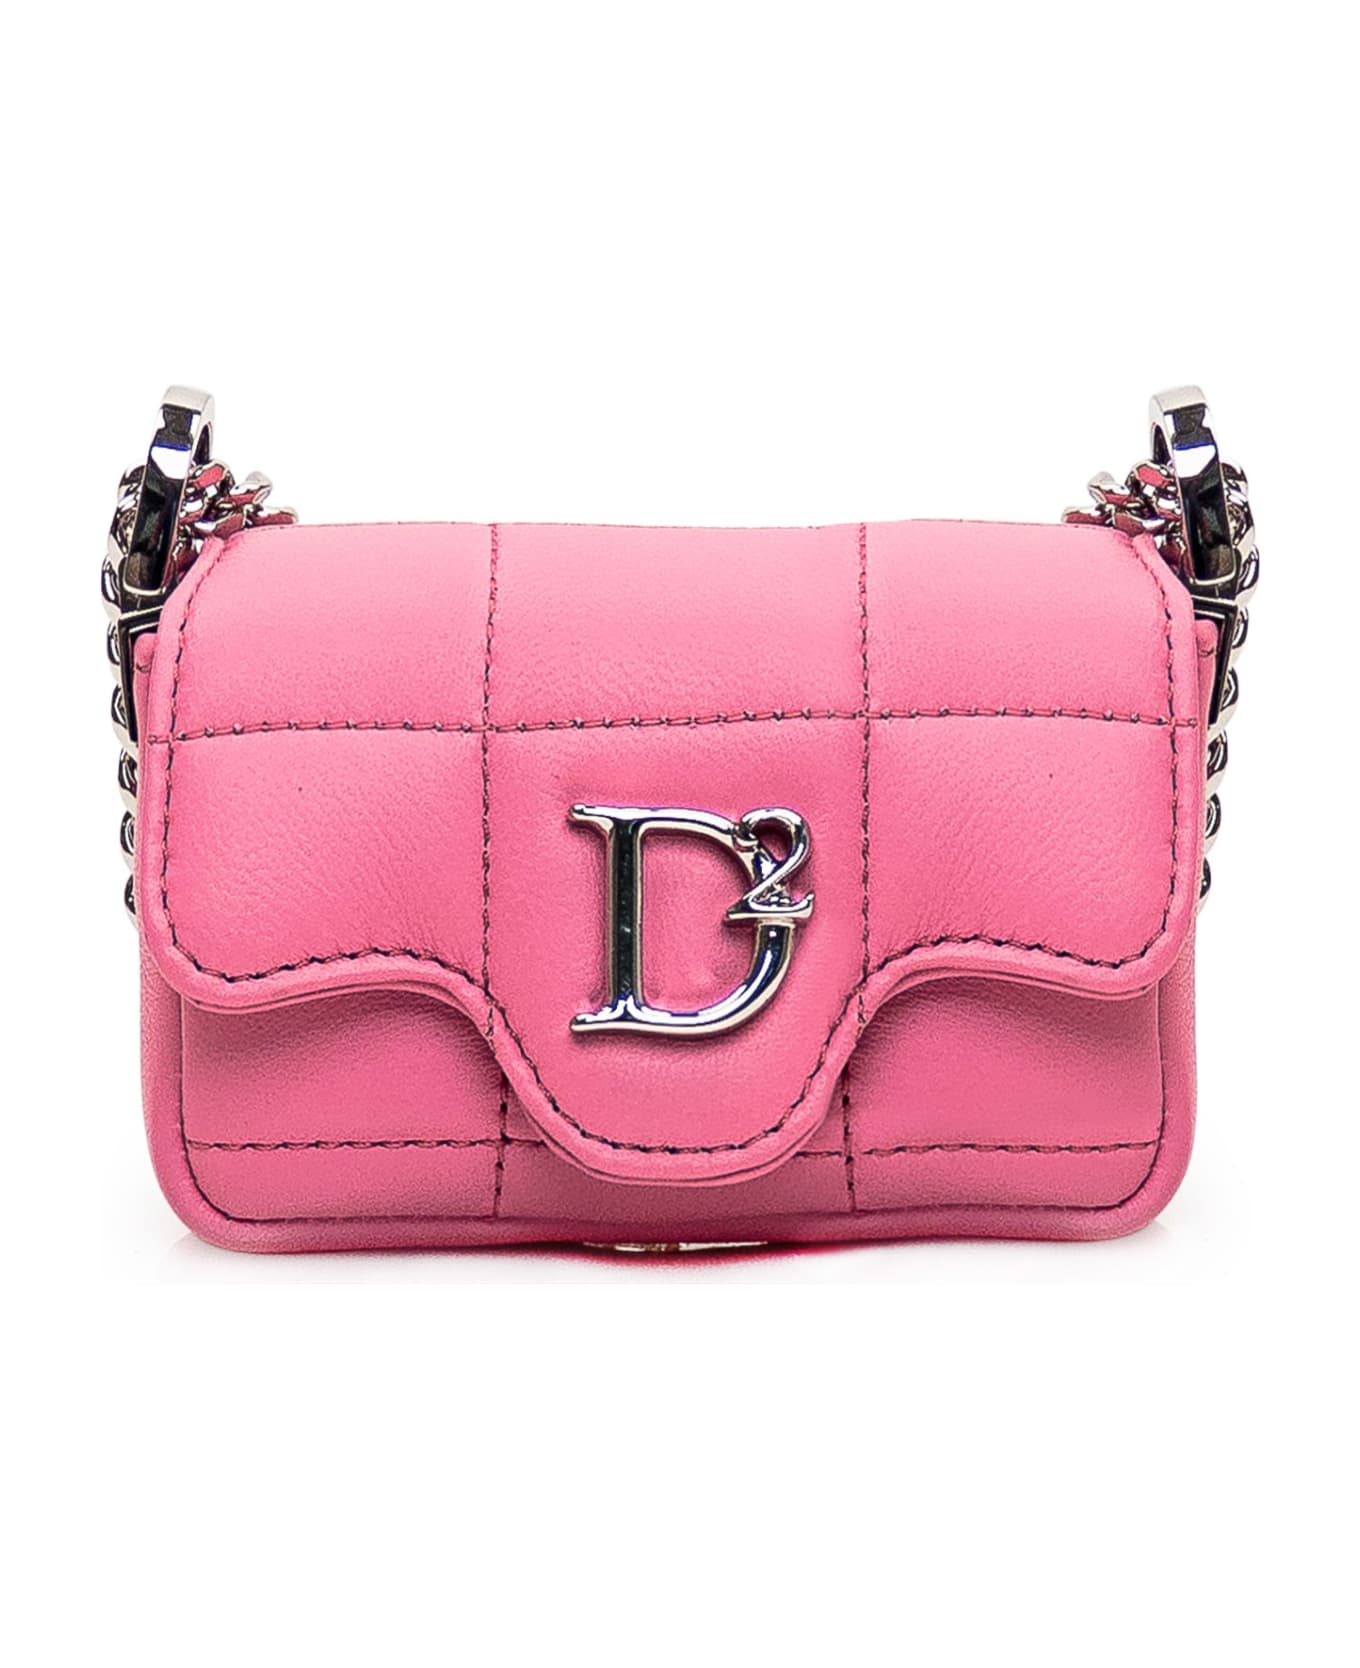 Dsquared2 Mini Bag In Leather - ROSA PALLADIO